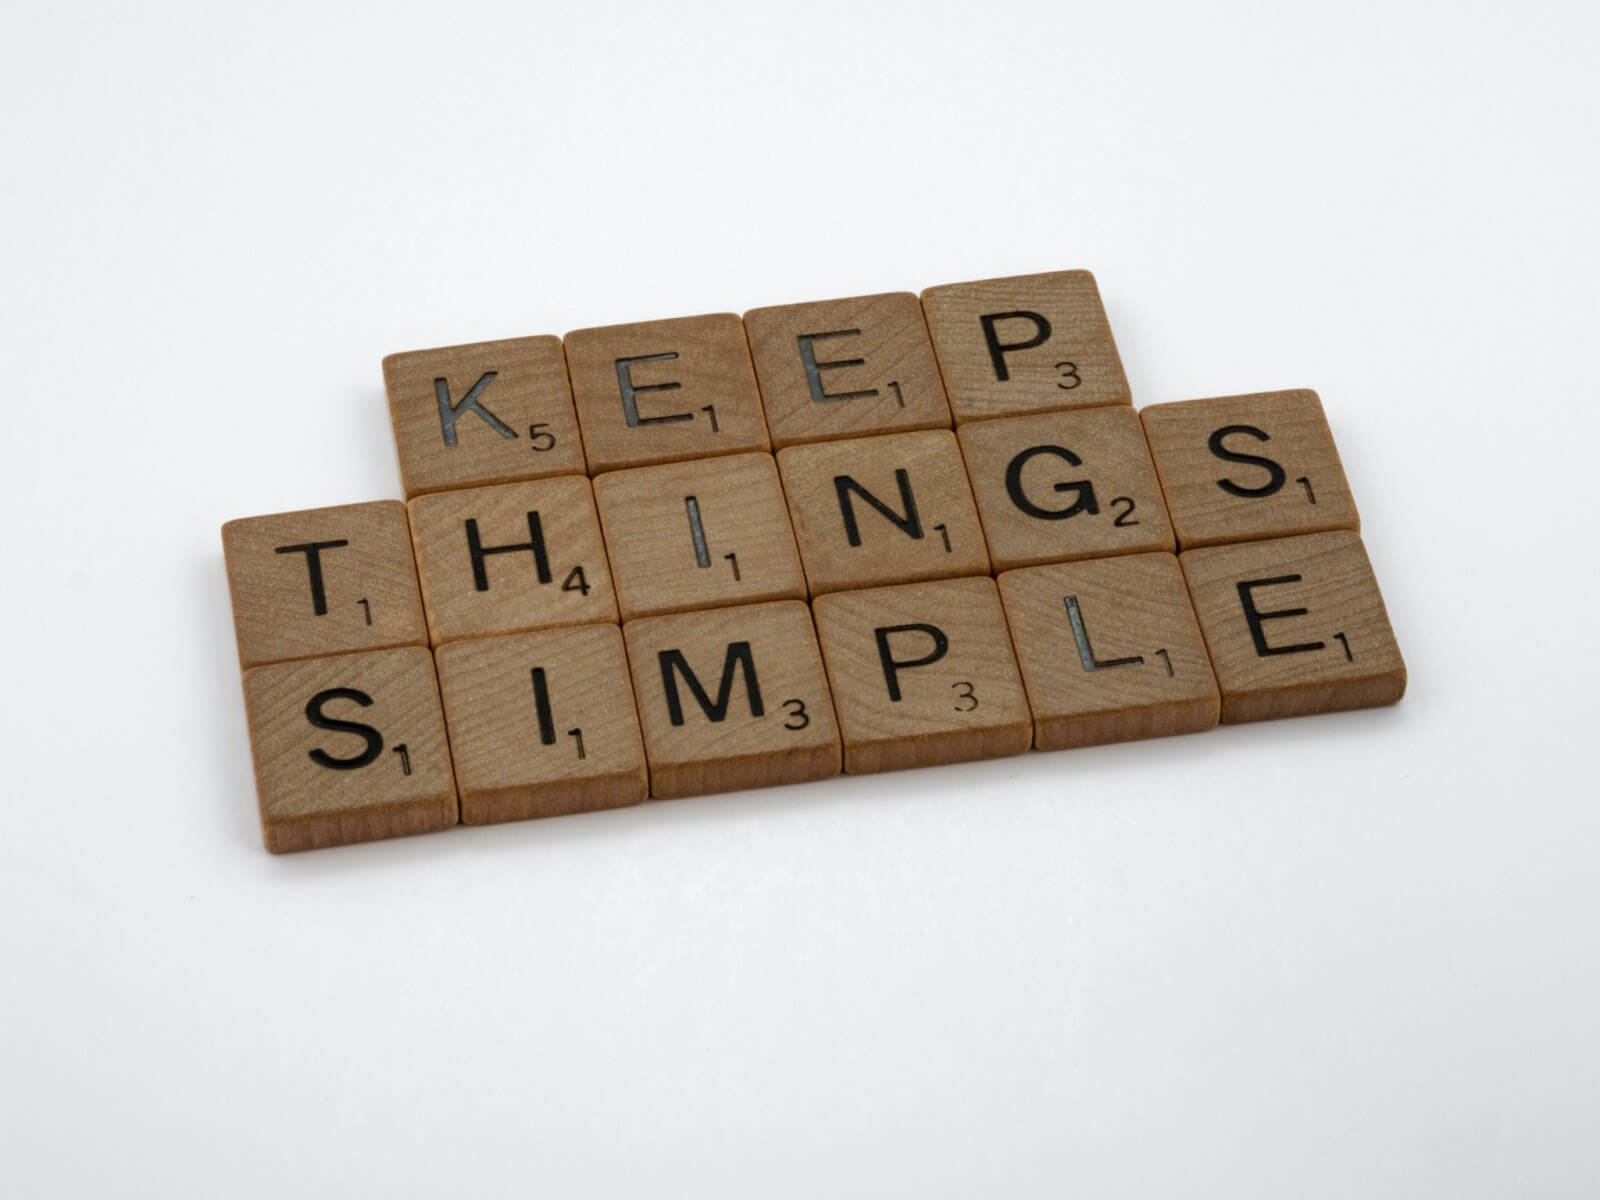 Blocks spelling out "keep things simple"